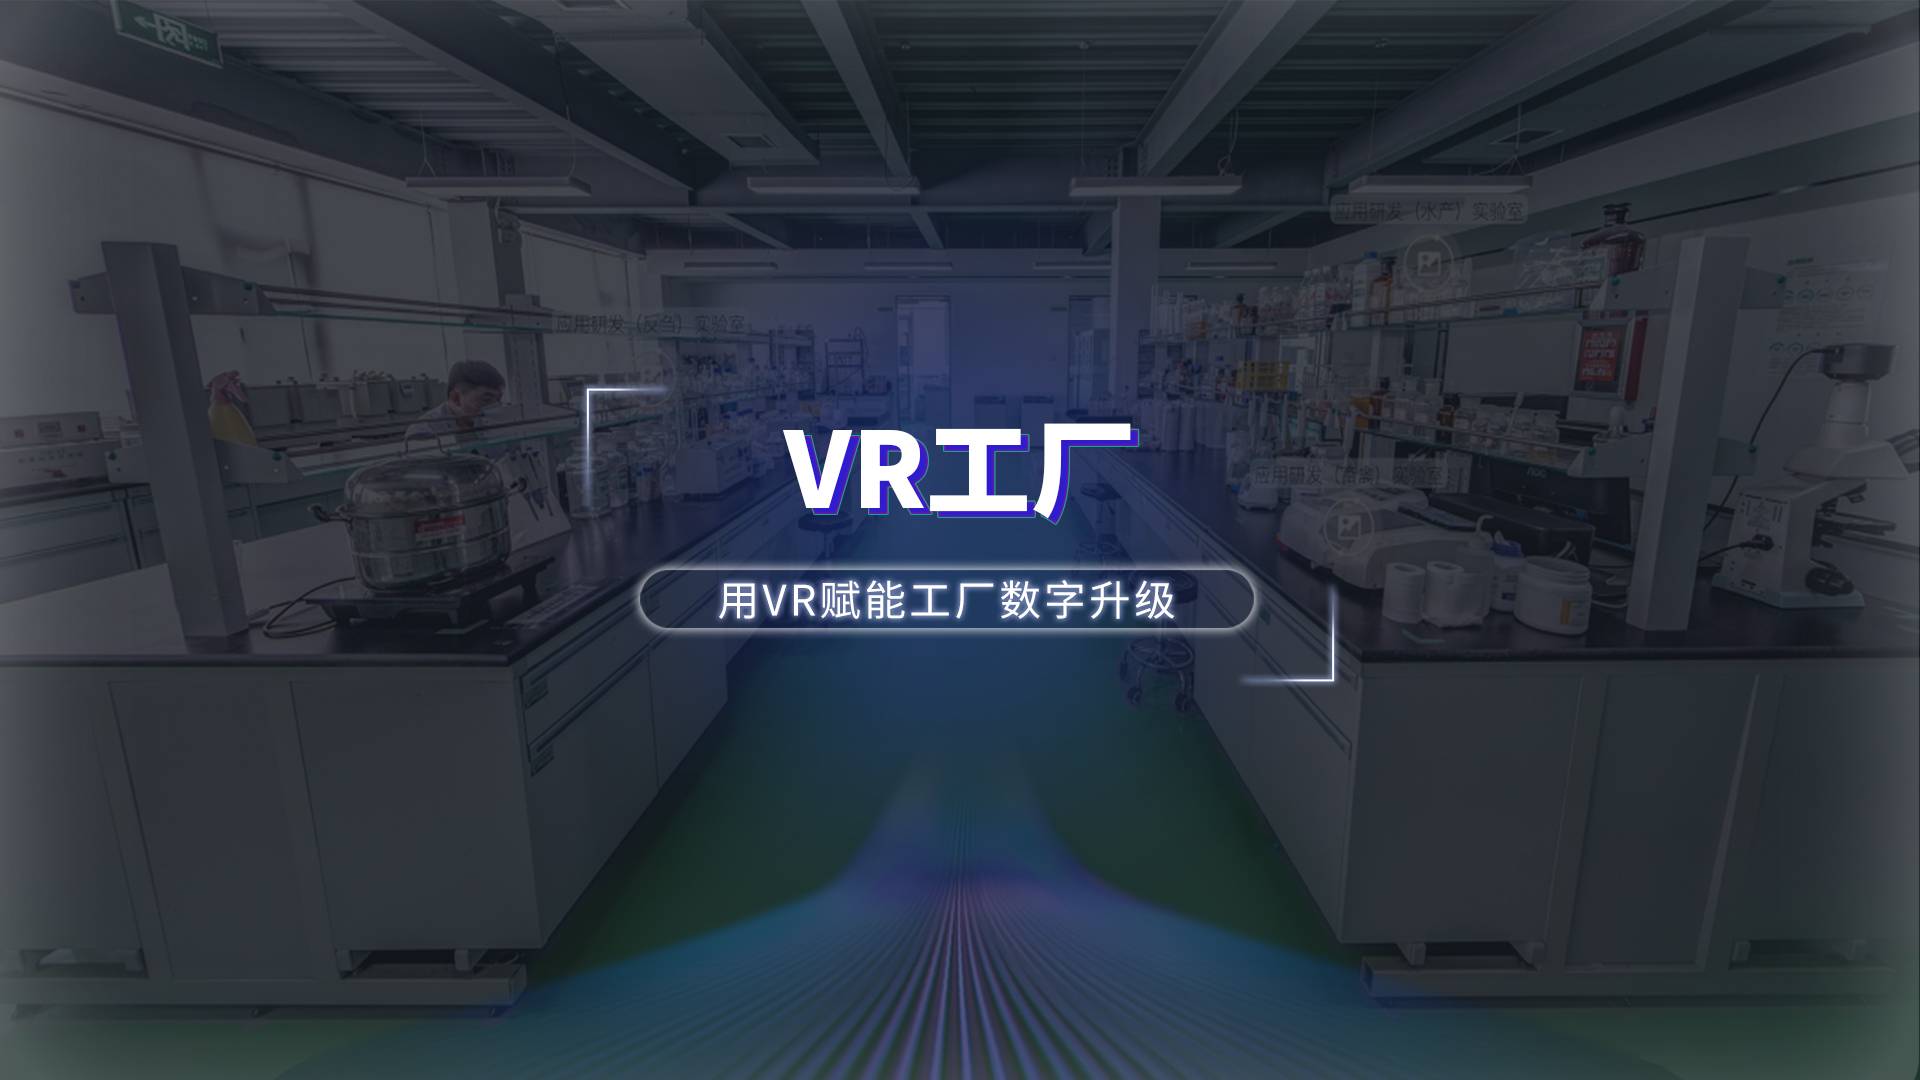 VRデジタル工場の多様な表示、デジタル企業工場の名刺を作成